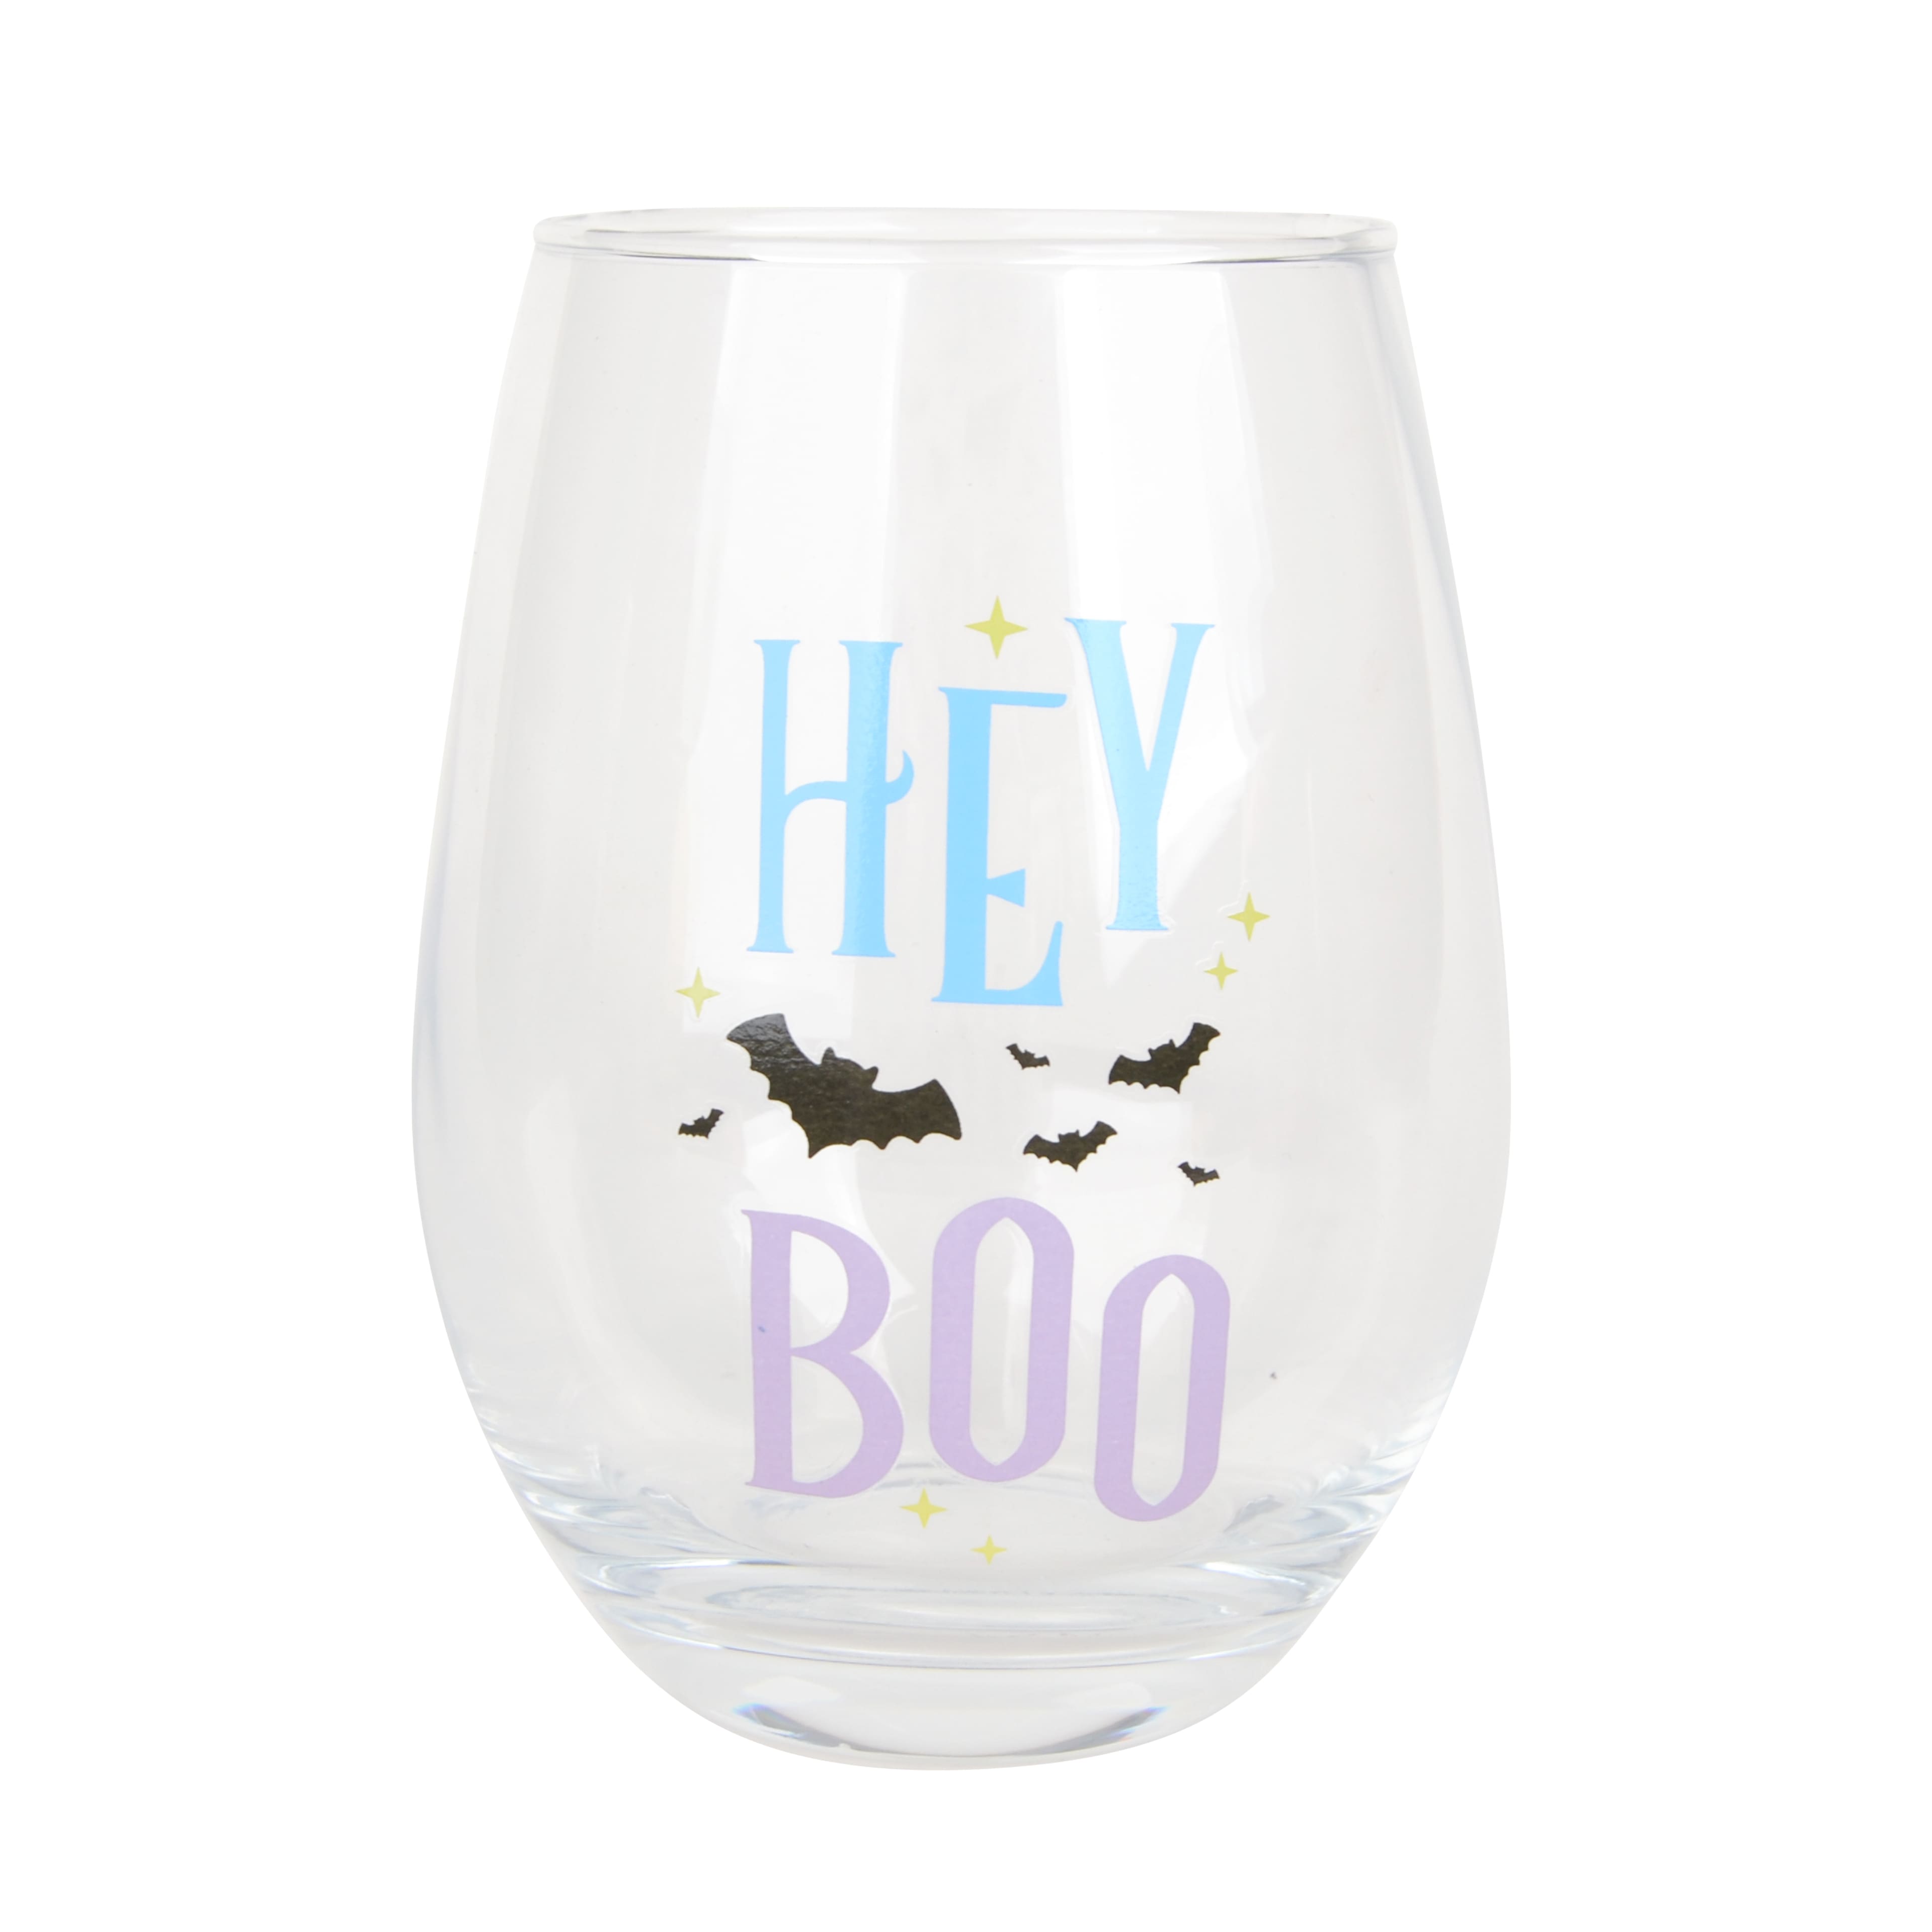 17oz. Hey Boo Stemless Wine Glass by Celebrate It™